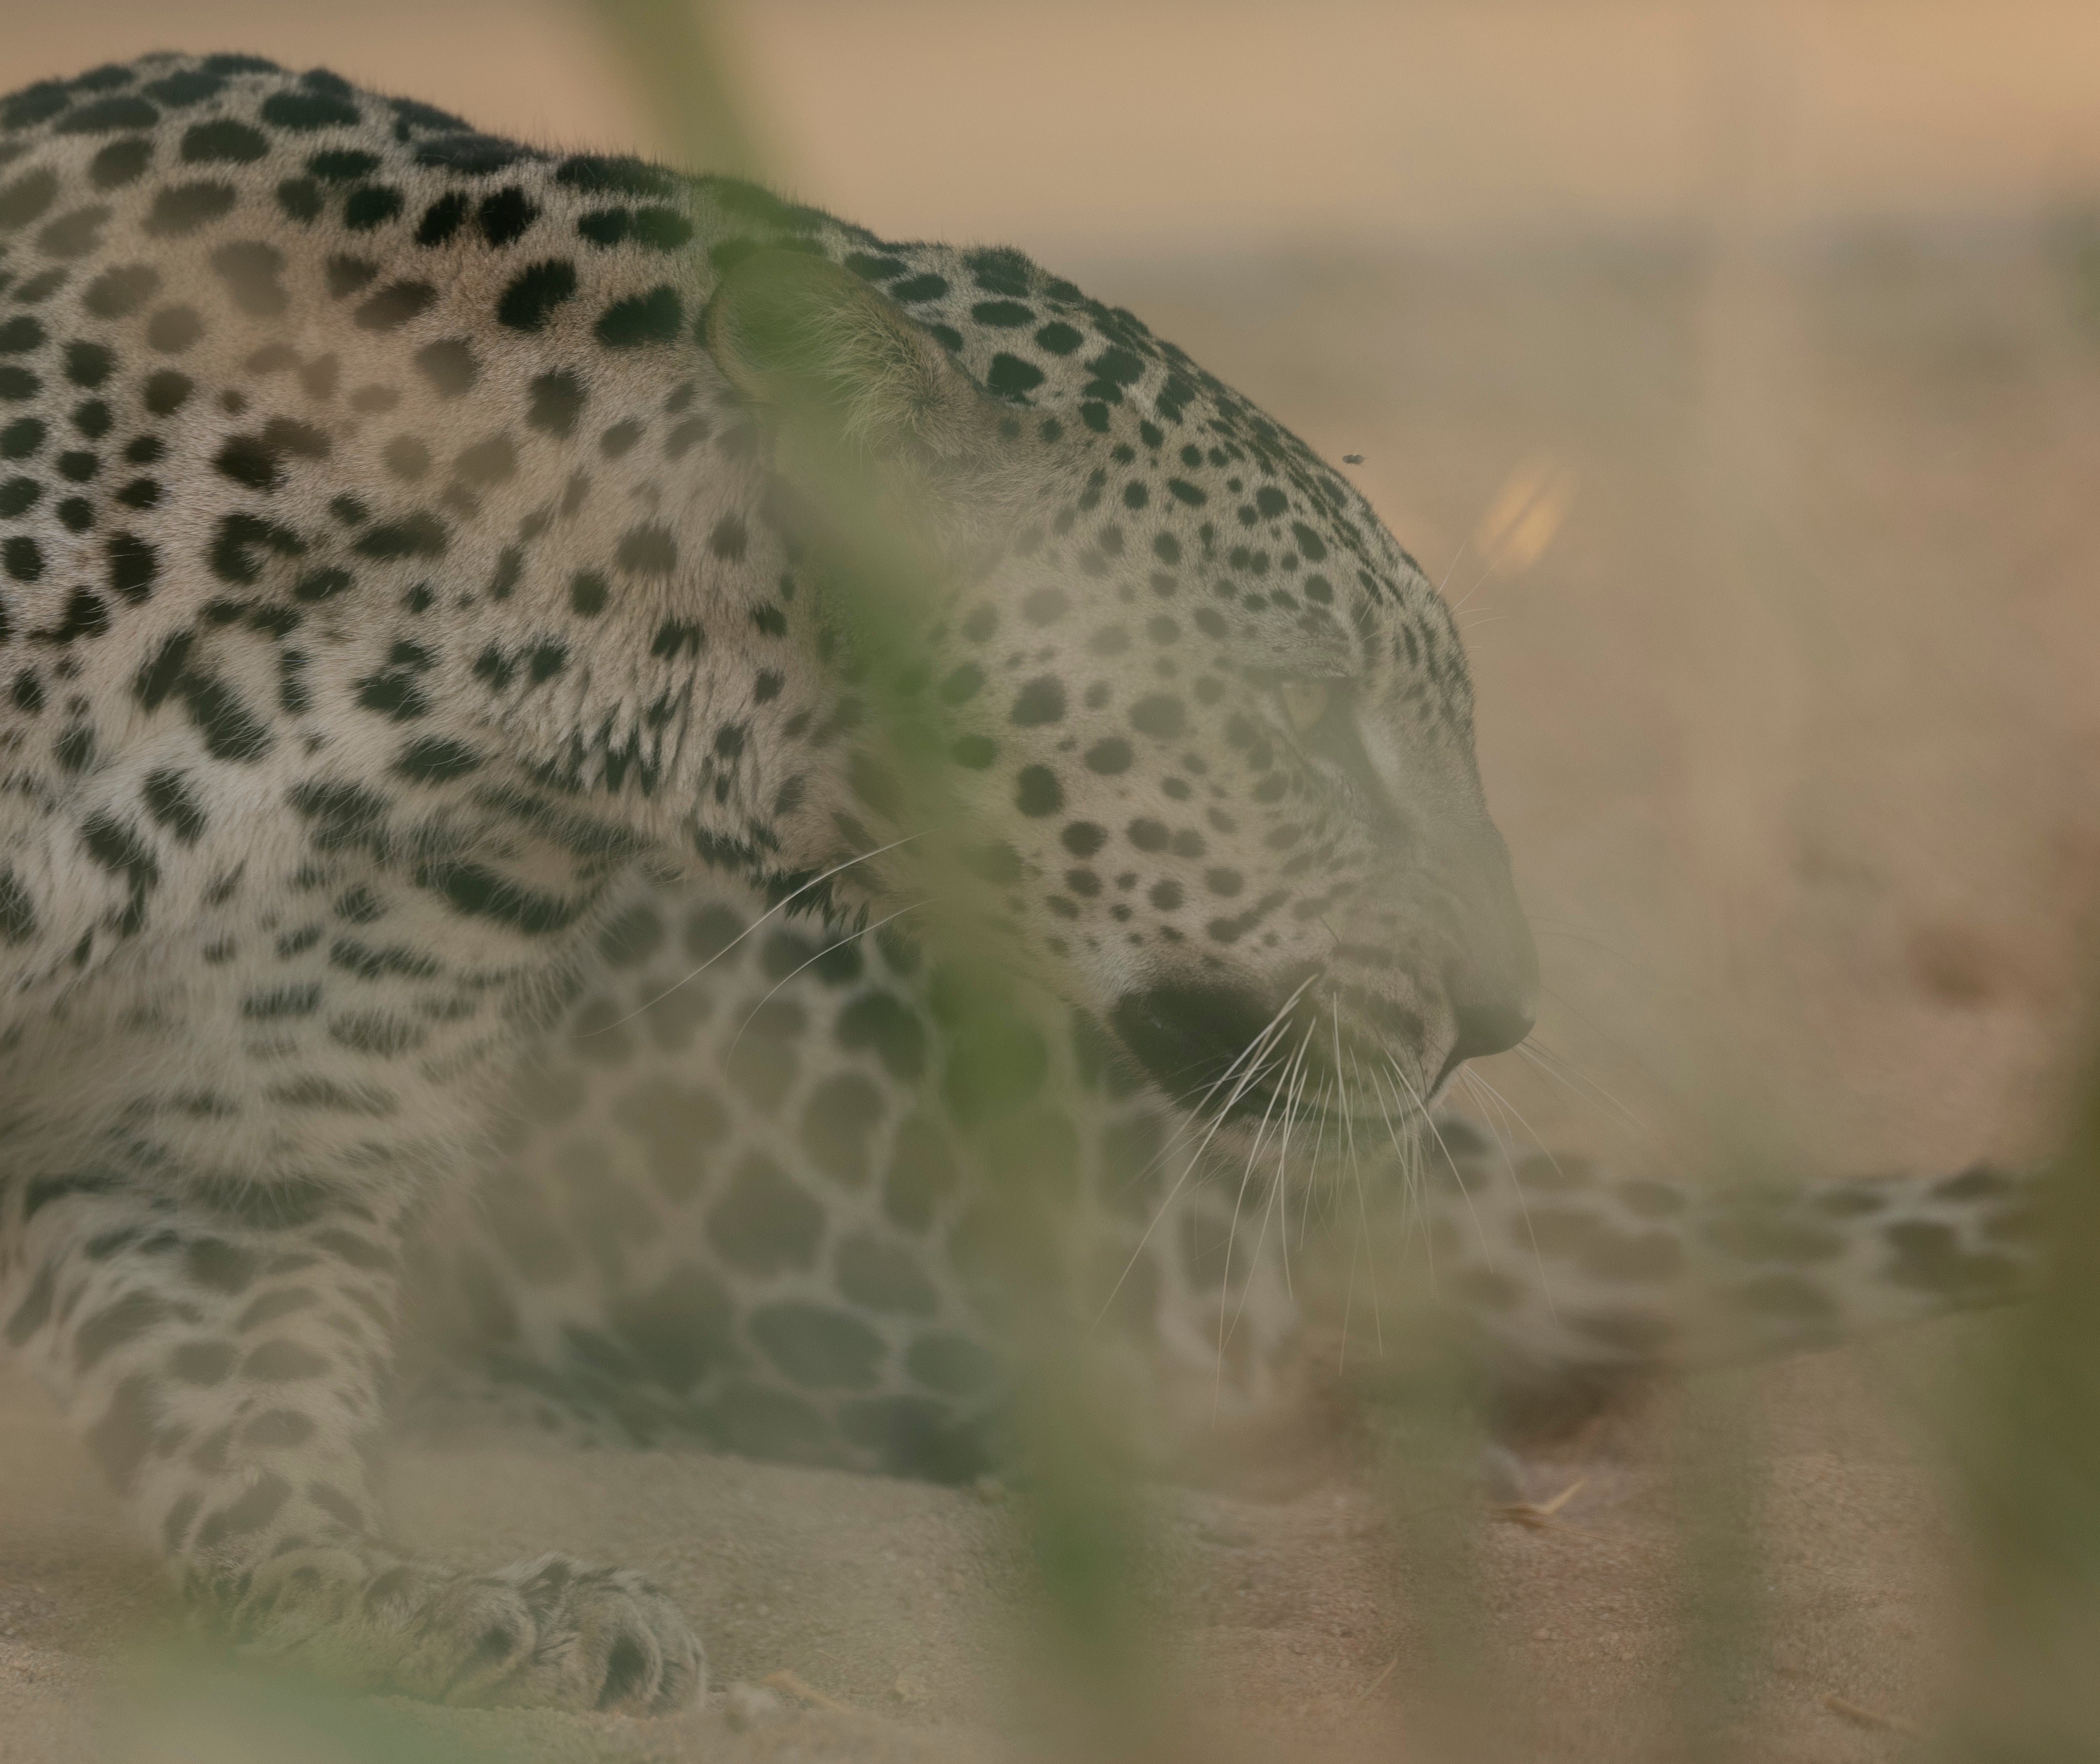 An Arabian leopard